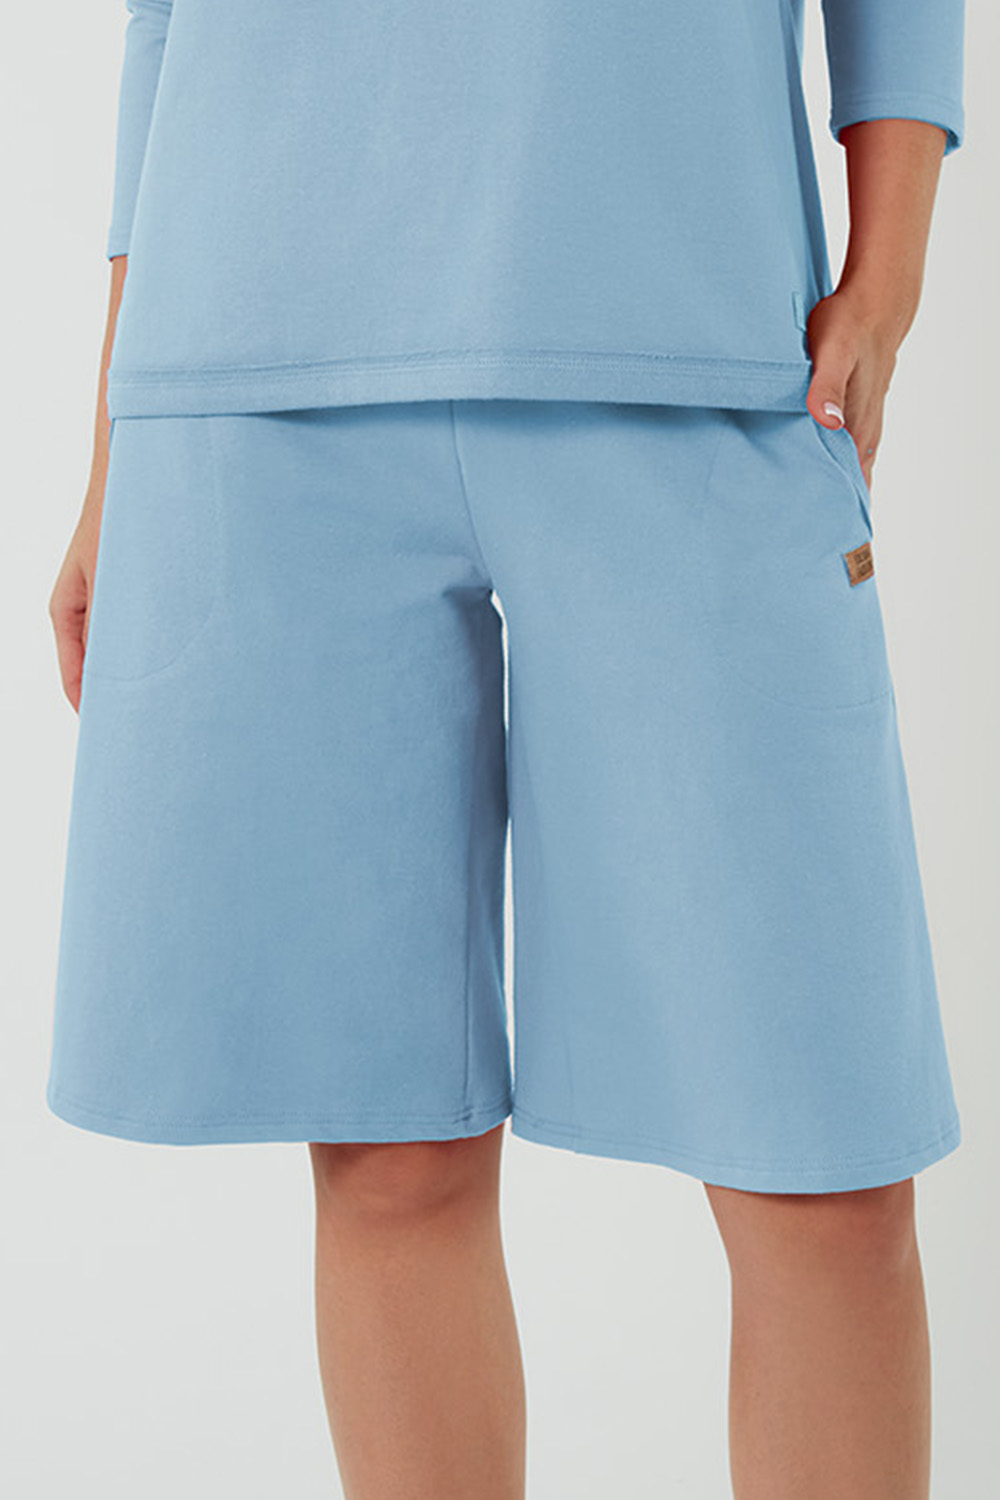 Italian Fashion Madri sp.1/2 Spodnie szerokie, niebieski